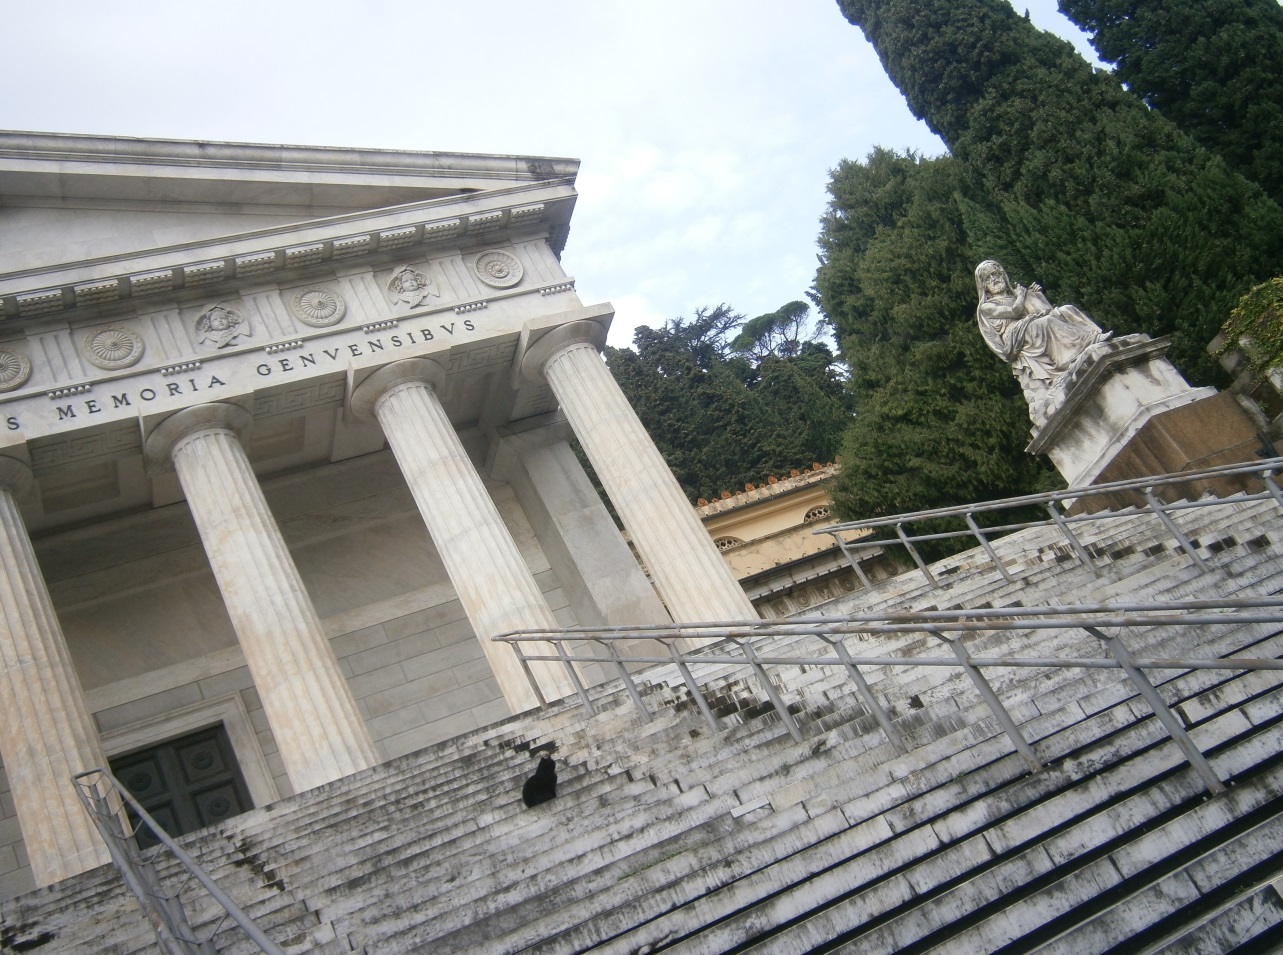 La scalinata principale per accedere al Pantheon. C'è anche un gatto sui gradini.